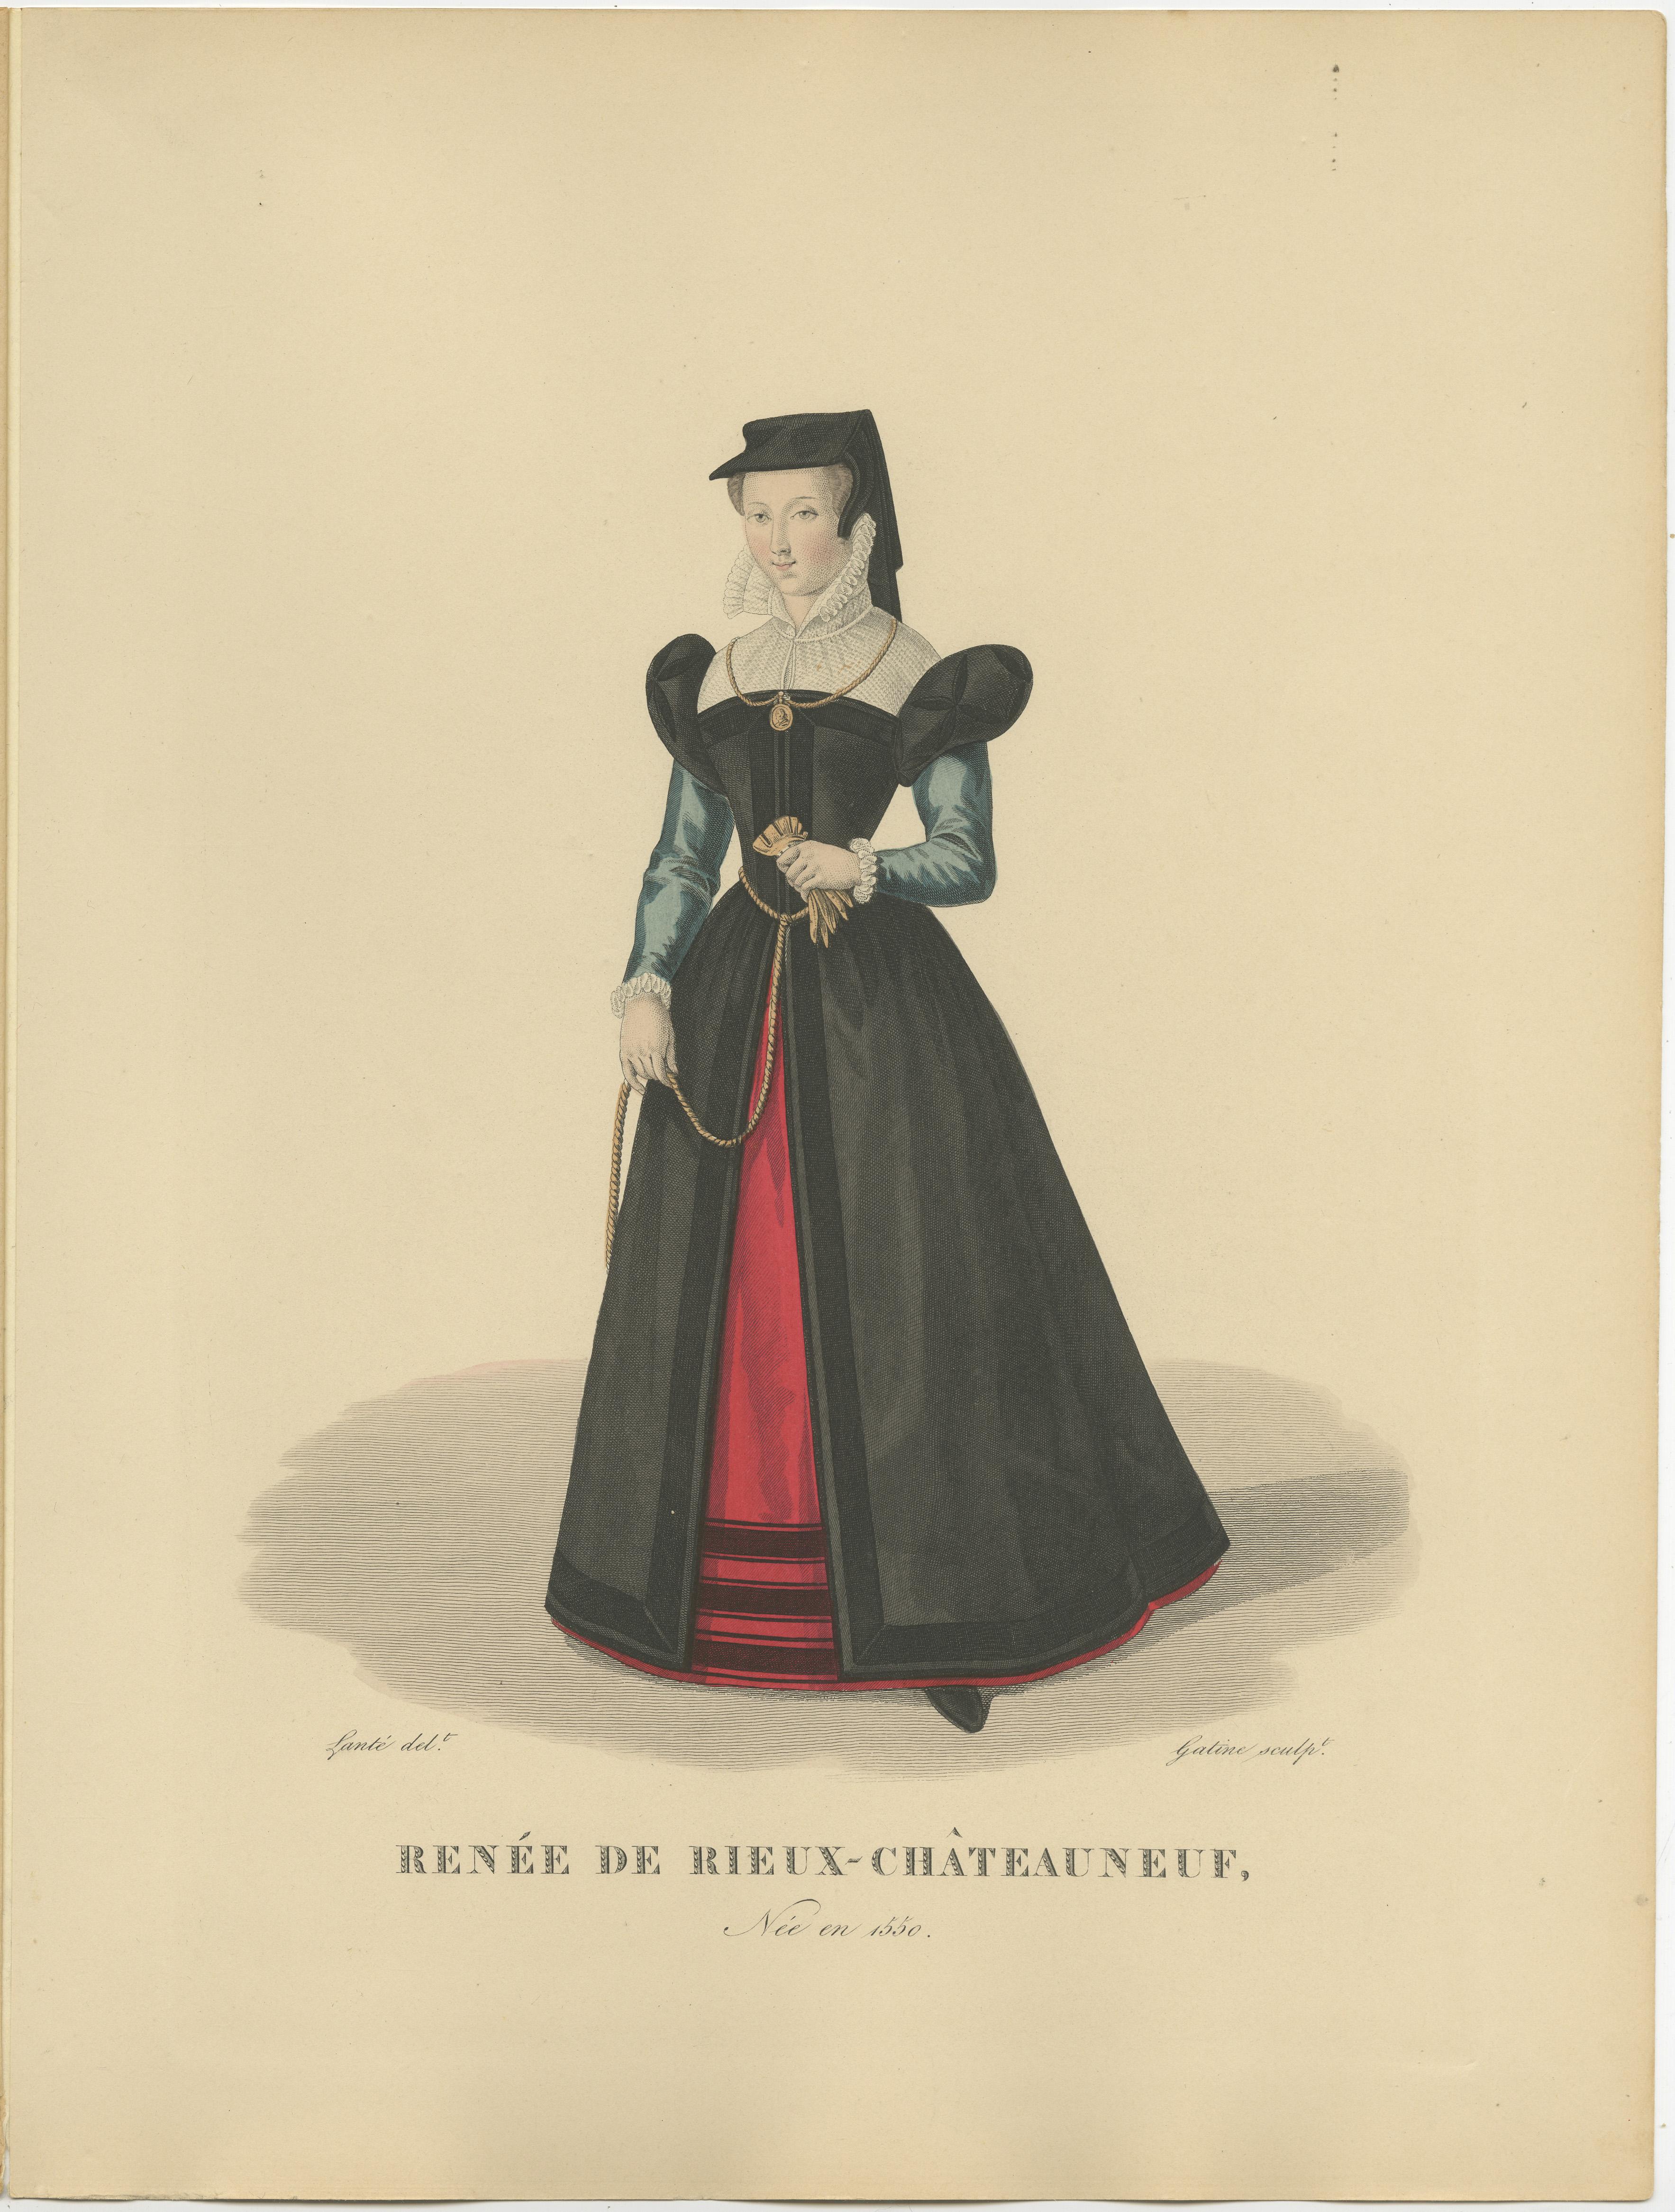 Antique print titled 'RENEE DE RIEUX CHATEAUNEUF' Original antique print of La Belle Châteauneuf.

